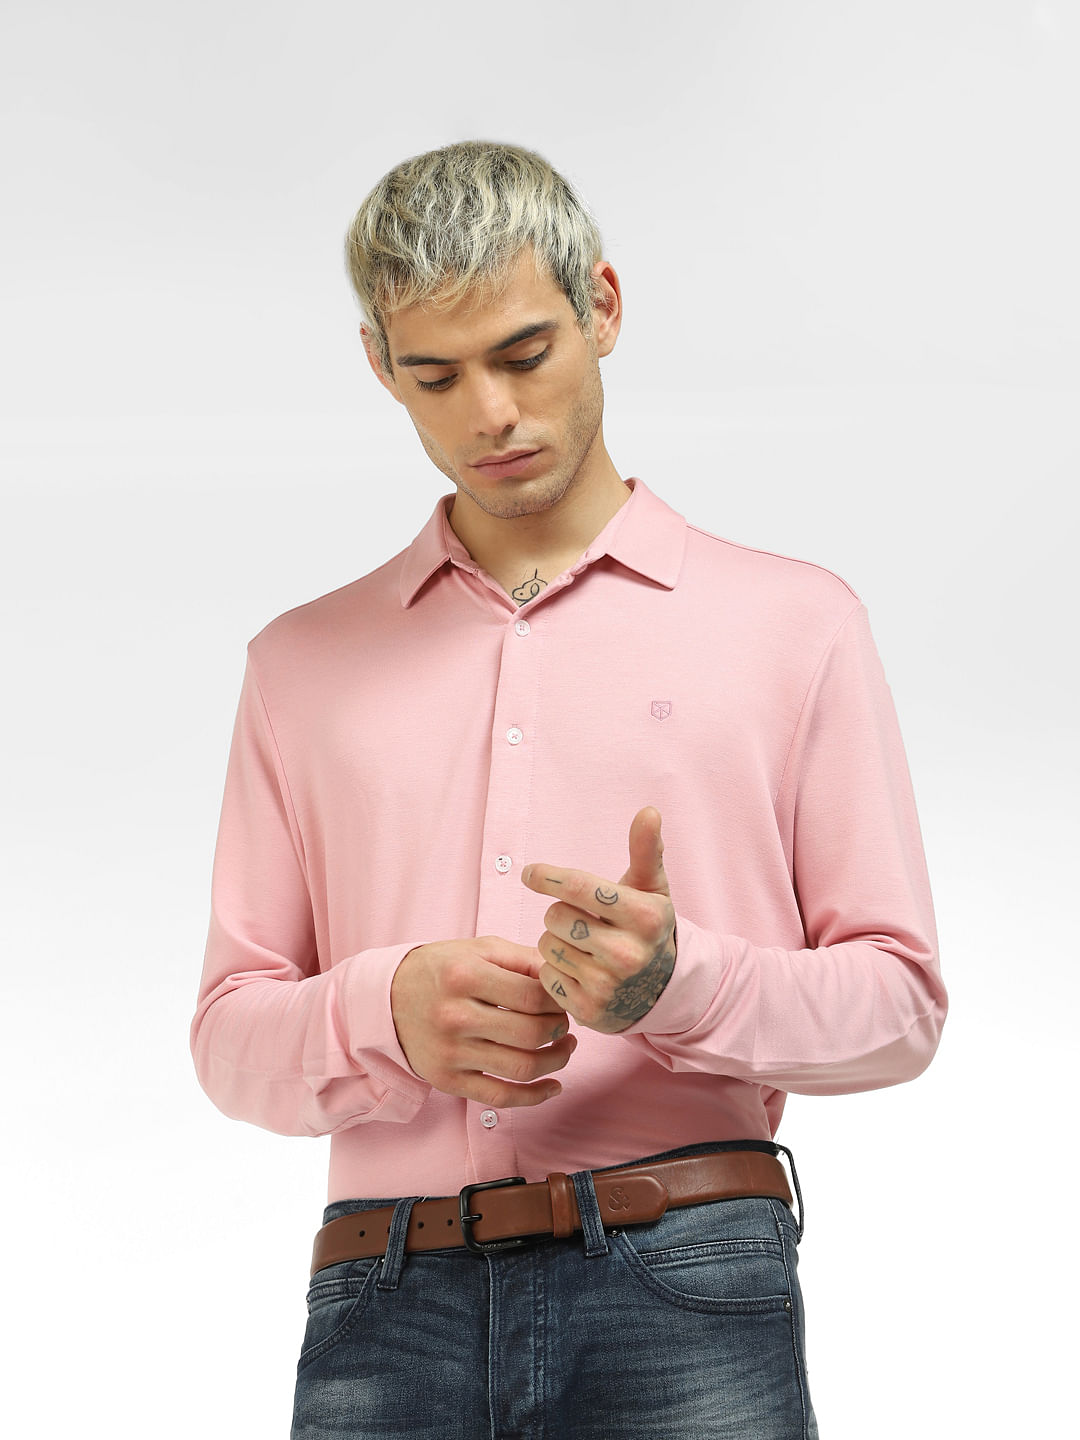 Pink shirt grey pants man｜TikTok Search